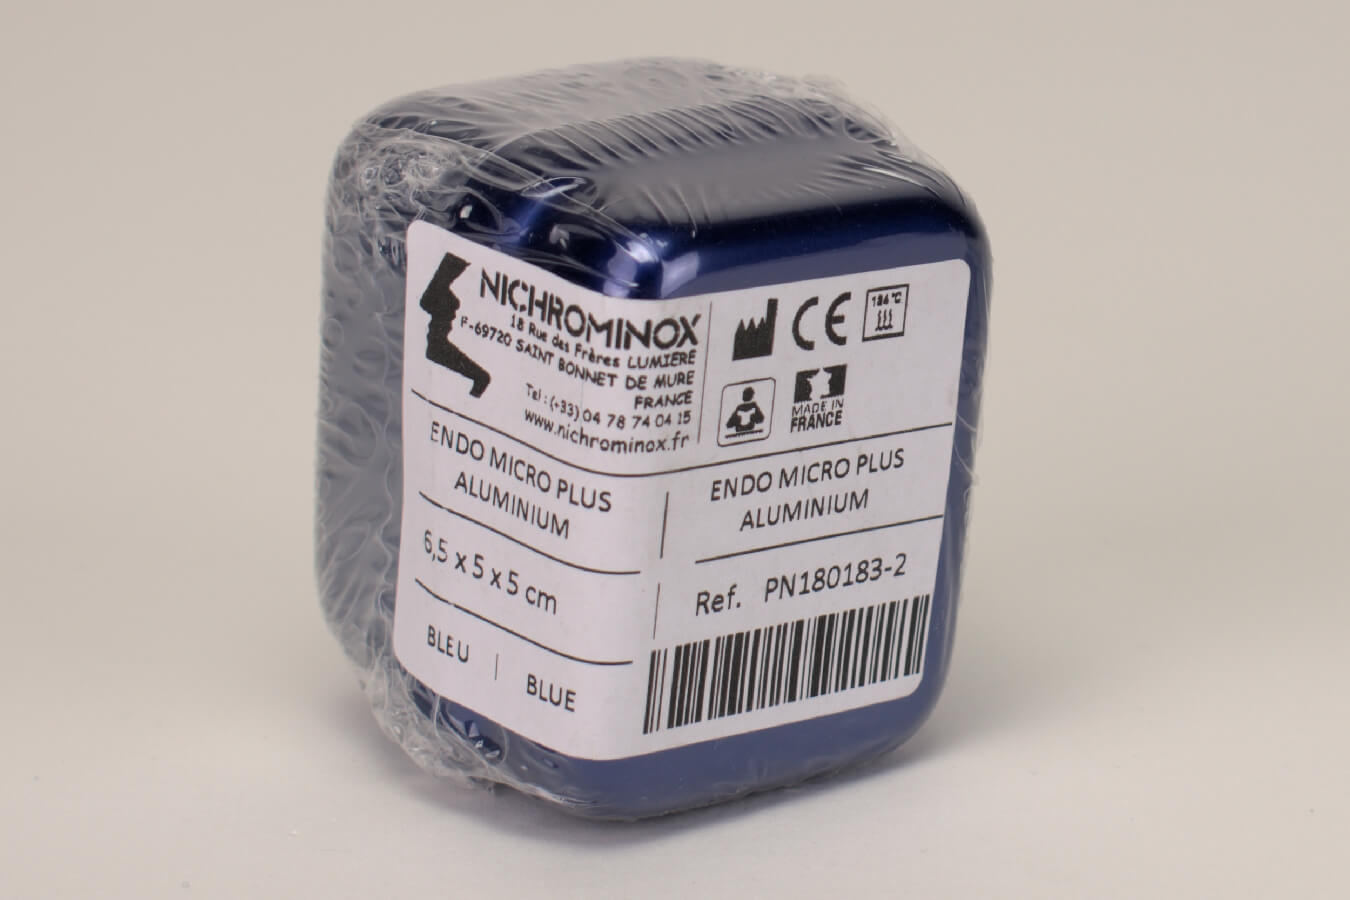 Endo Box Micro Plus blau 6,5x5x5cm St